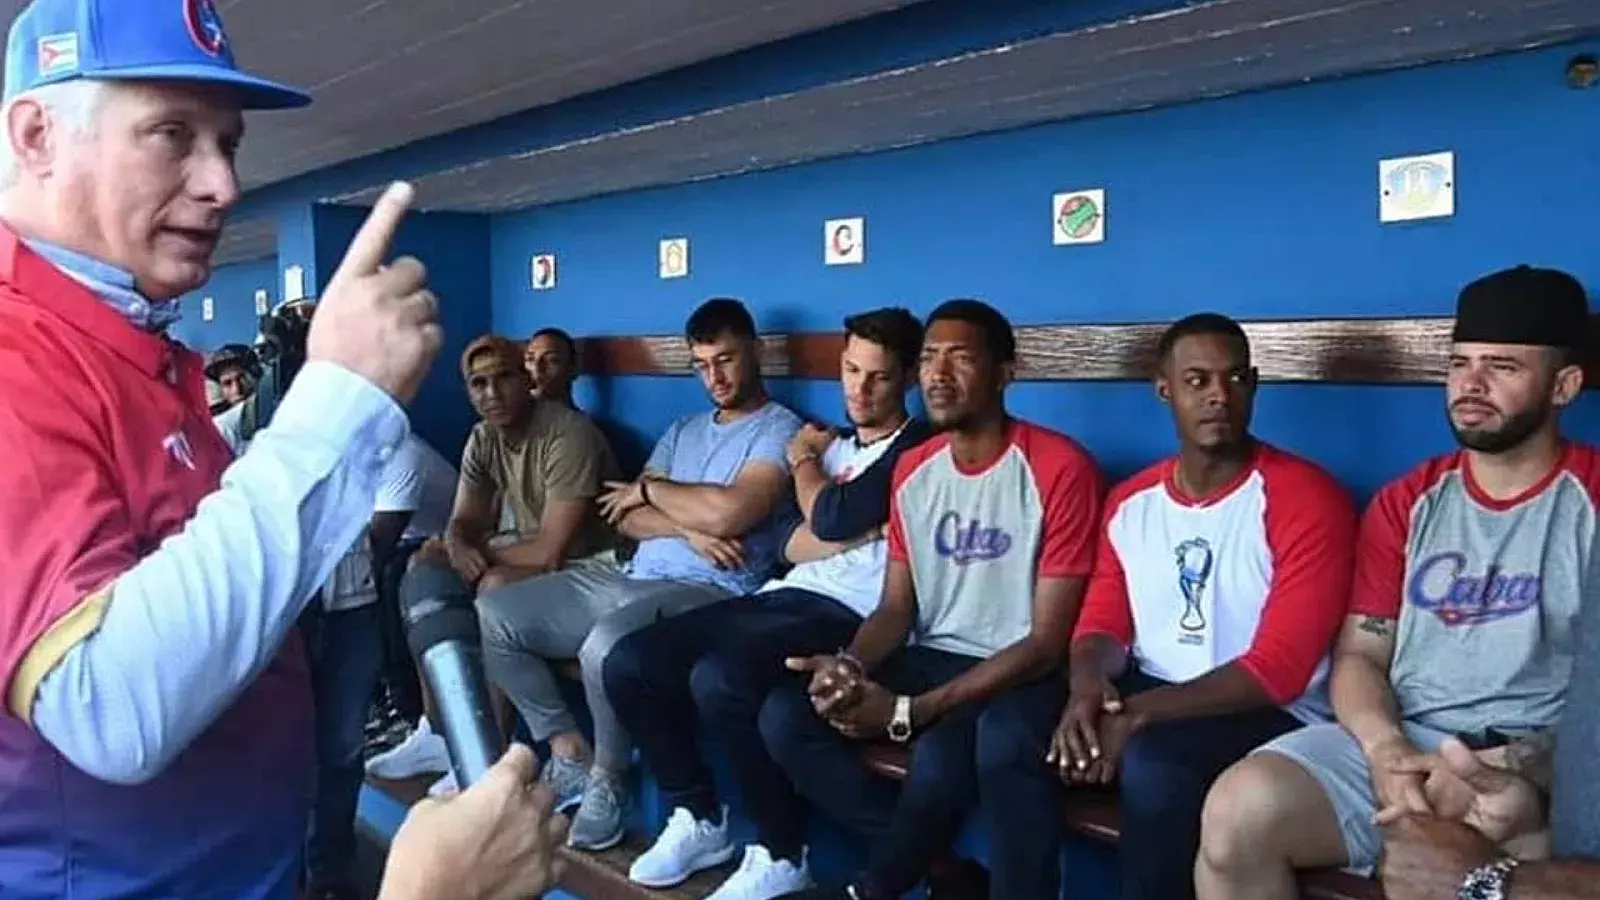 Díaz-Canel arenga al equipo Cuba del Clásico Mundial de Béisbol